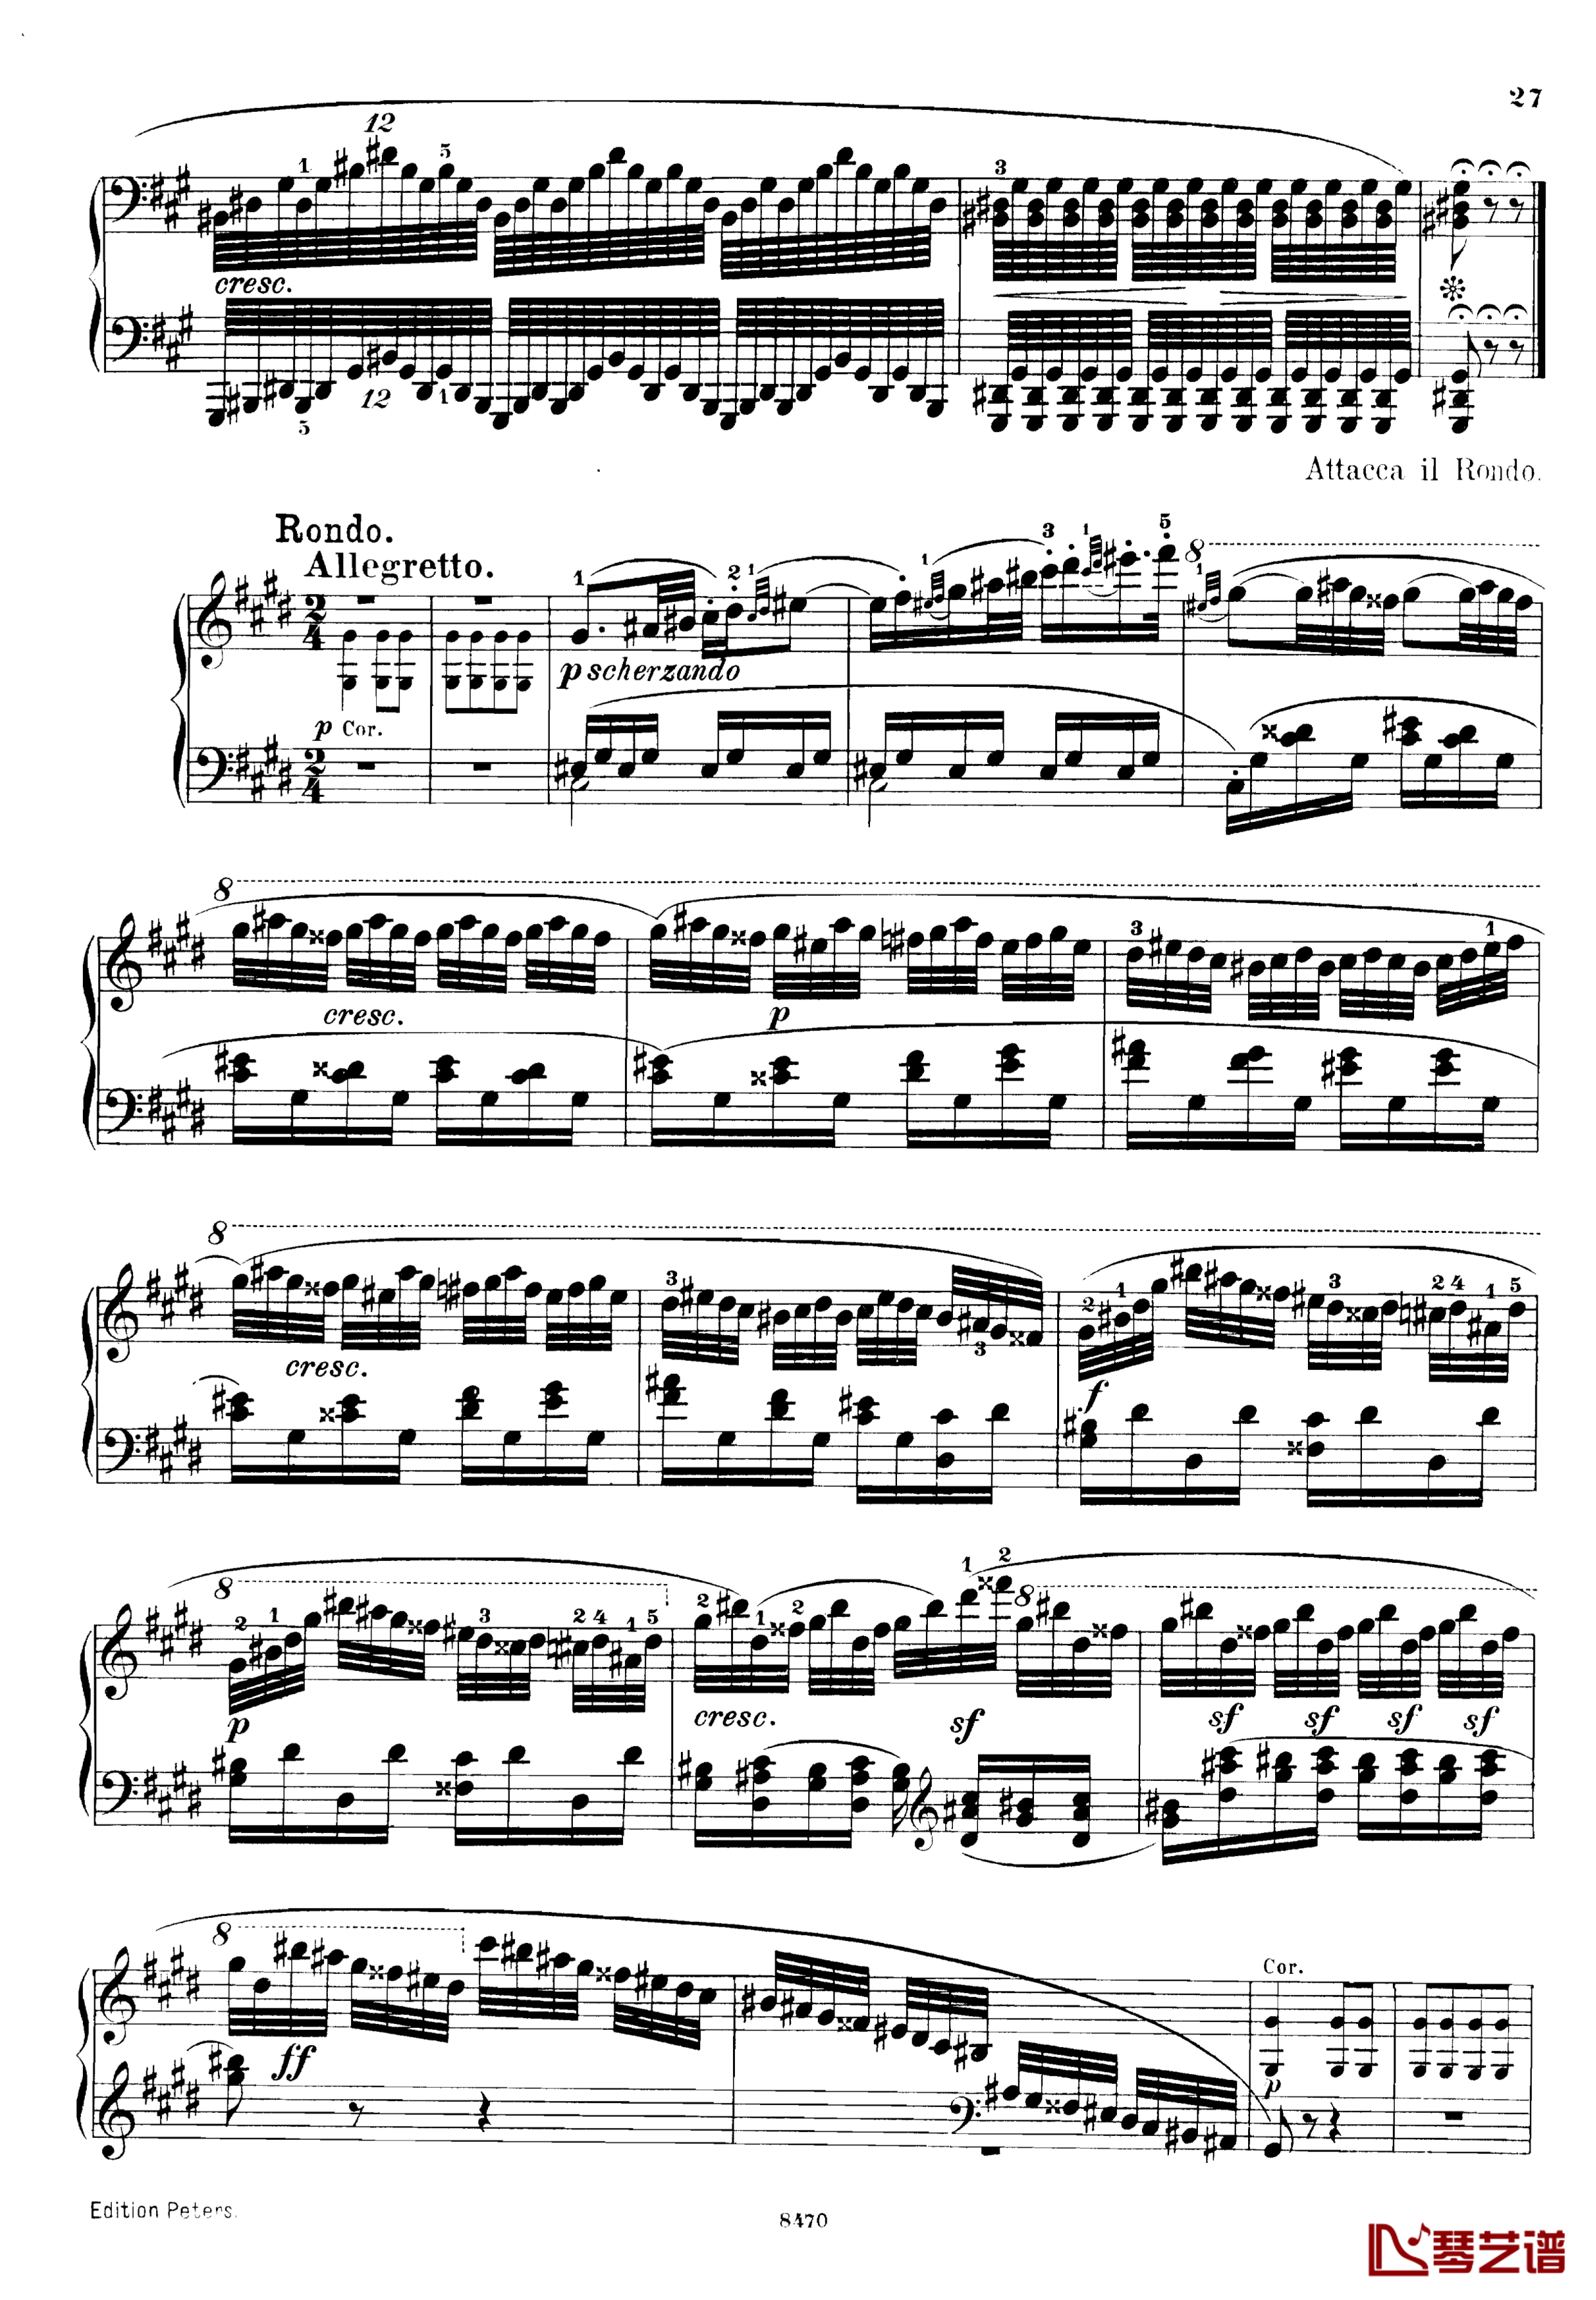 升c小调第三钢琴协奏曲Op.55钢琴谱-克里斯蒂安-里斯27